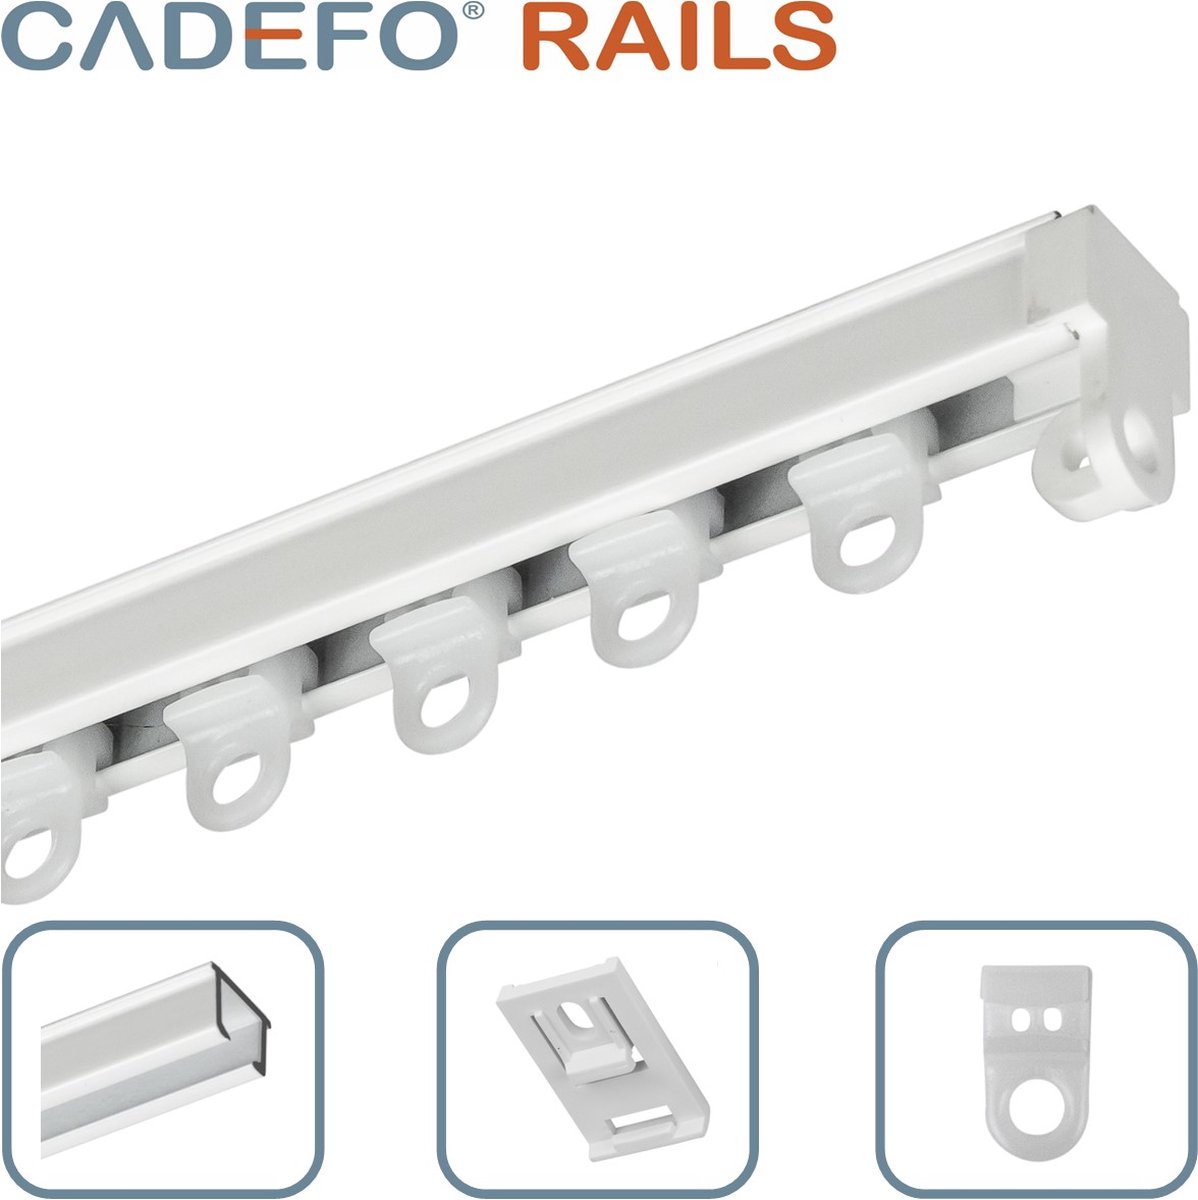 CADEFO RAILS (151 - 200 cm) Gordijnrails - Compleet op maat! - UIT 1 STUK - Leverbaar tot 6 meter - Plafondbevestiging - Lengte 186 cm